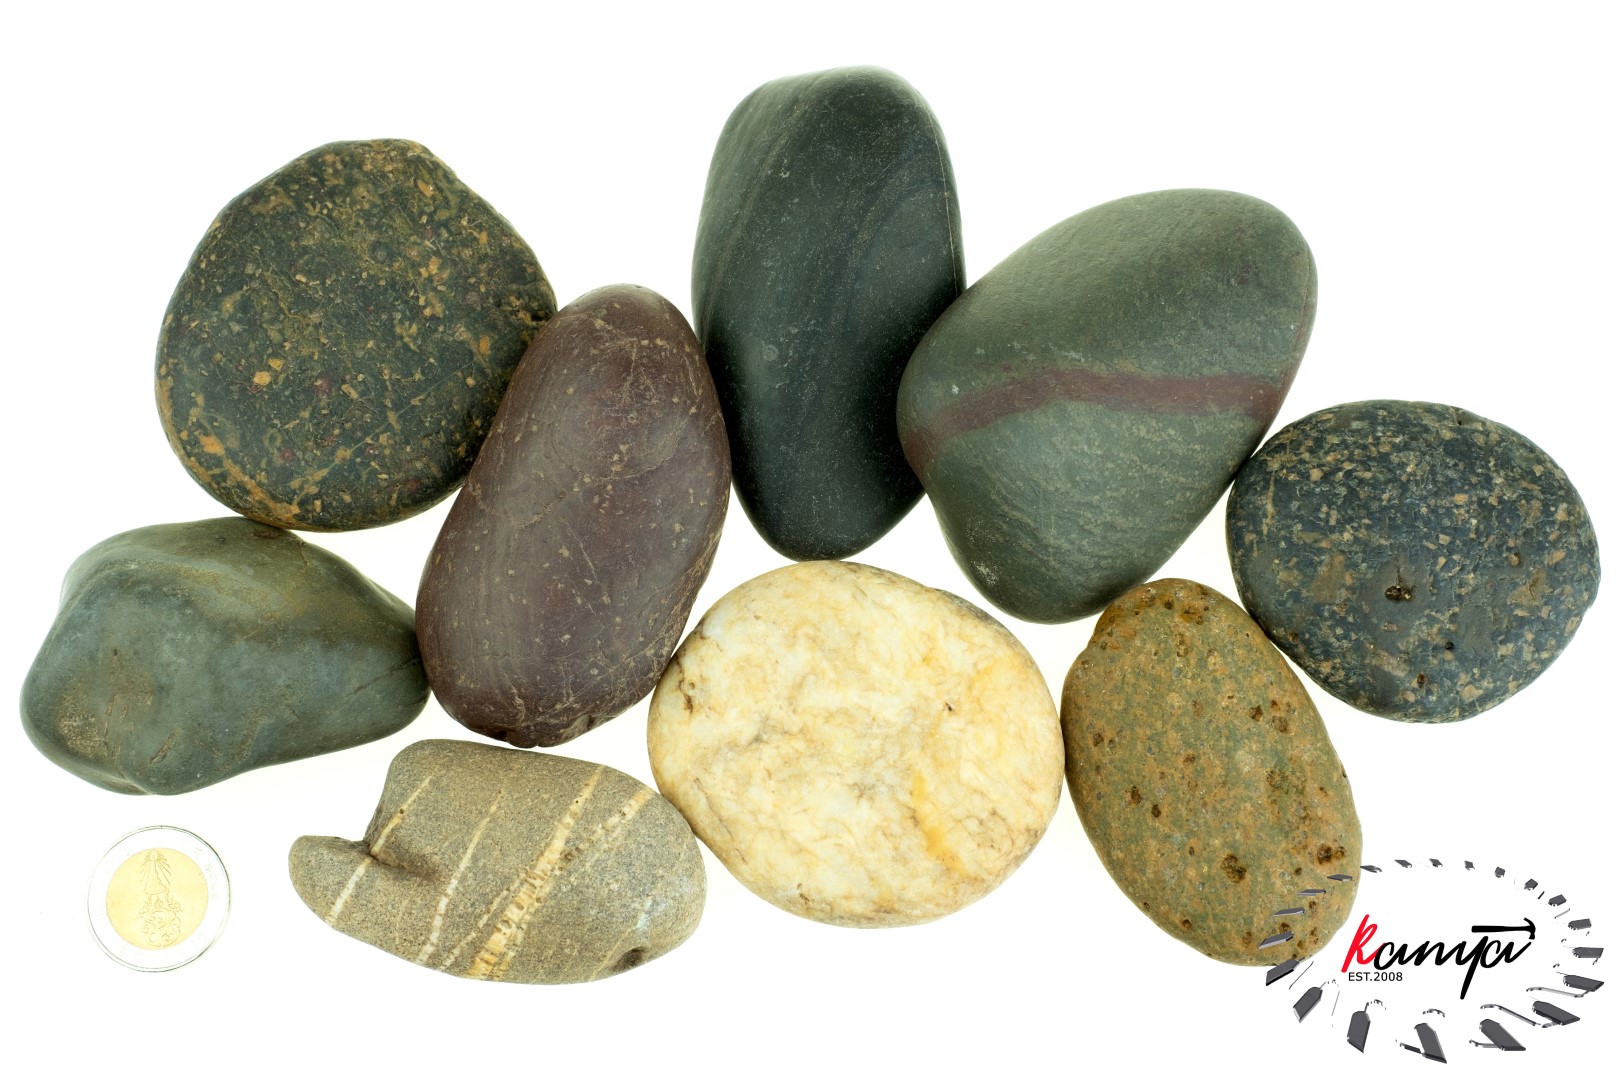 หิน หินธรรมชาติ หินกรวดแม่น้ำ คัดมือ 1 กิโลกรัม 🔥 หินสวยๆ คละไซซ์ หิน ...